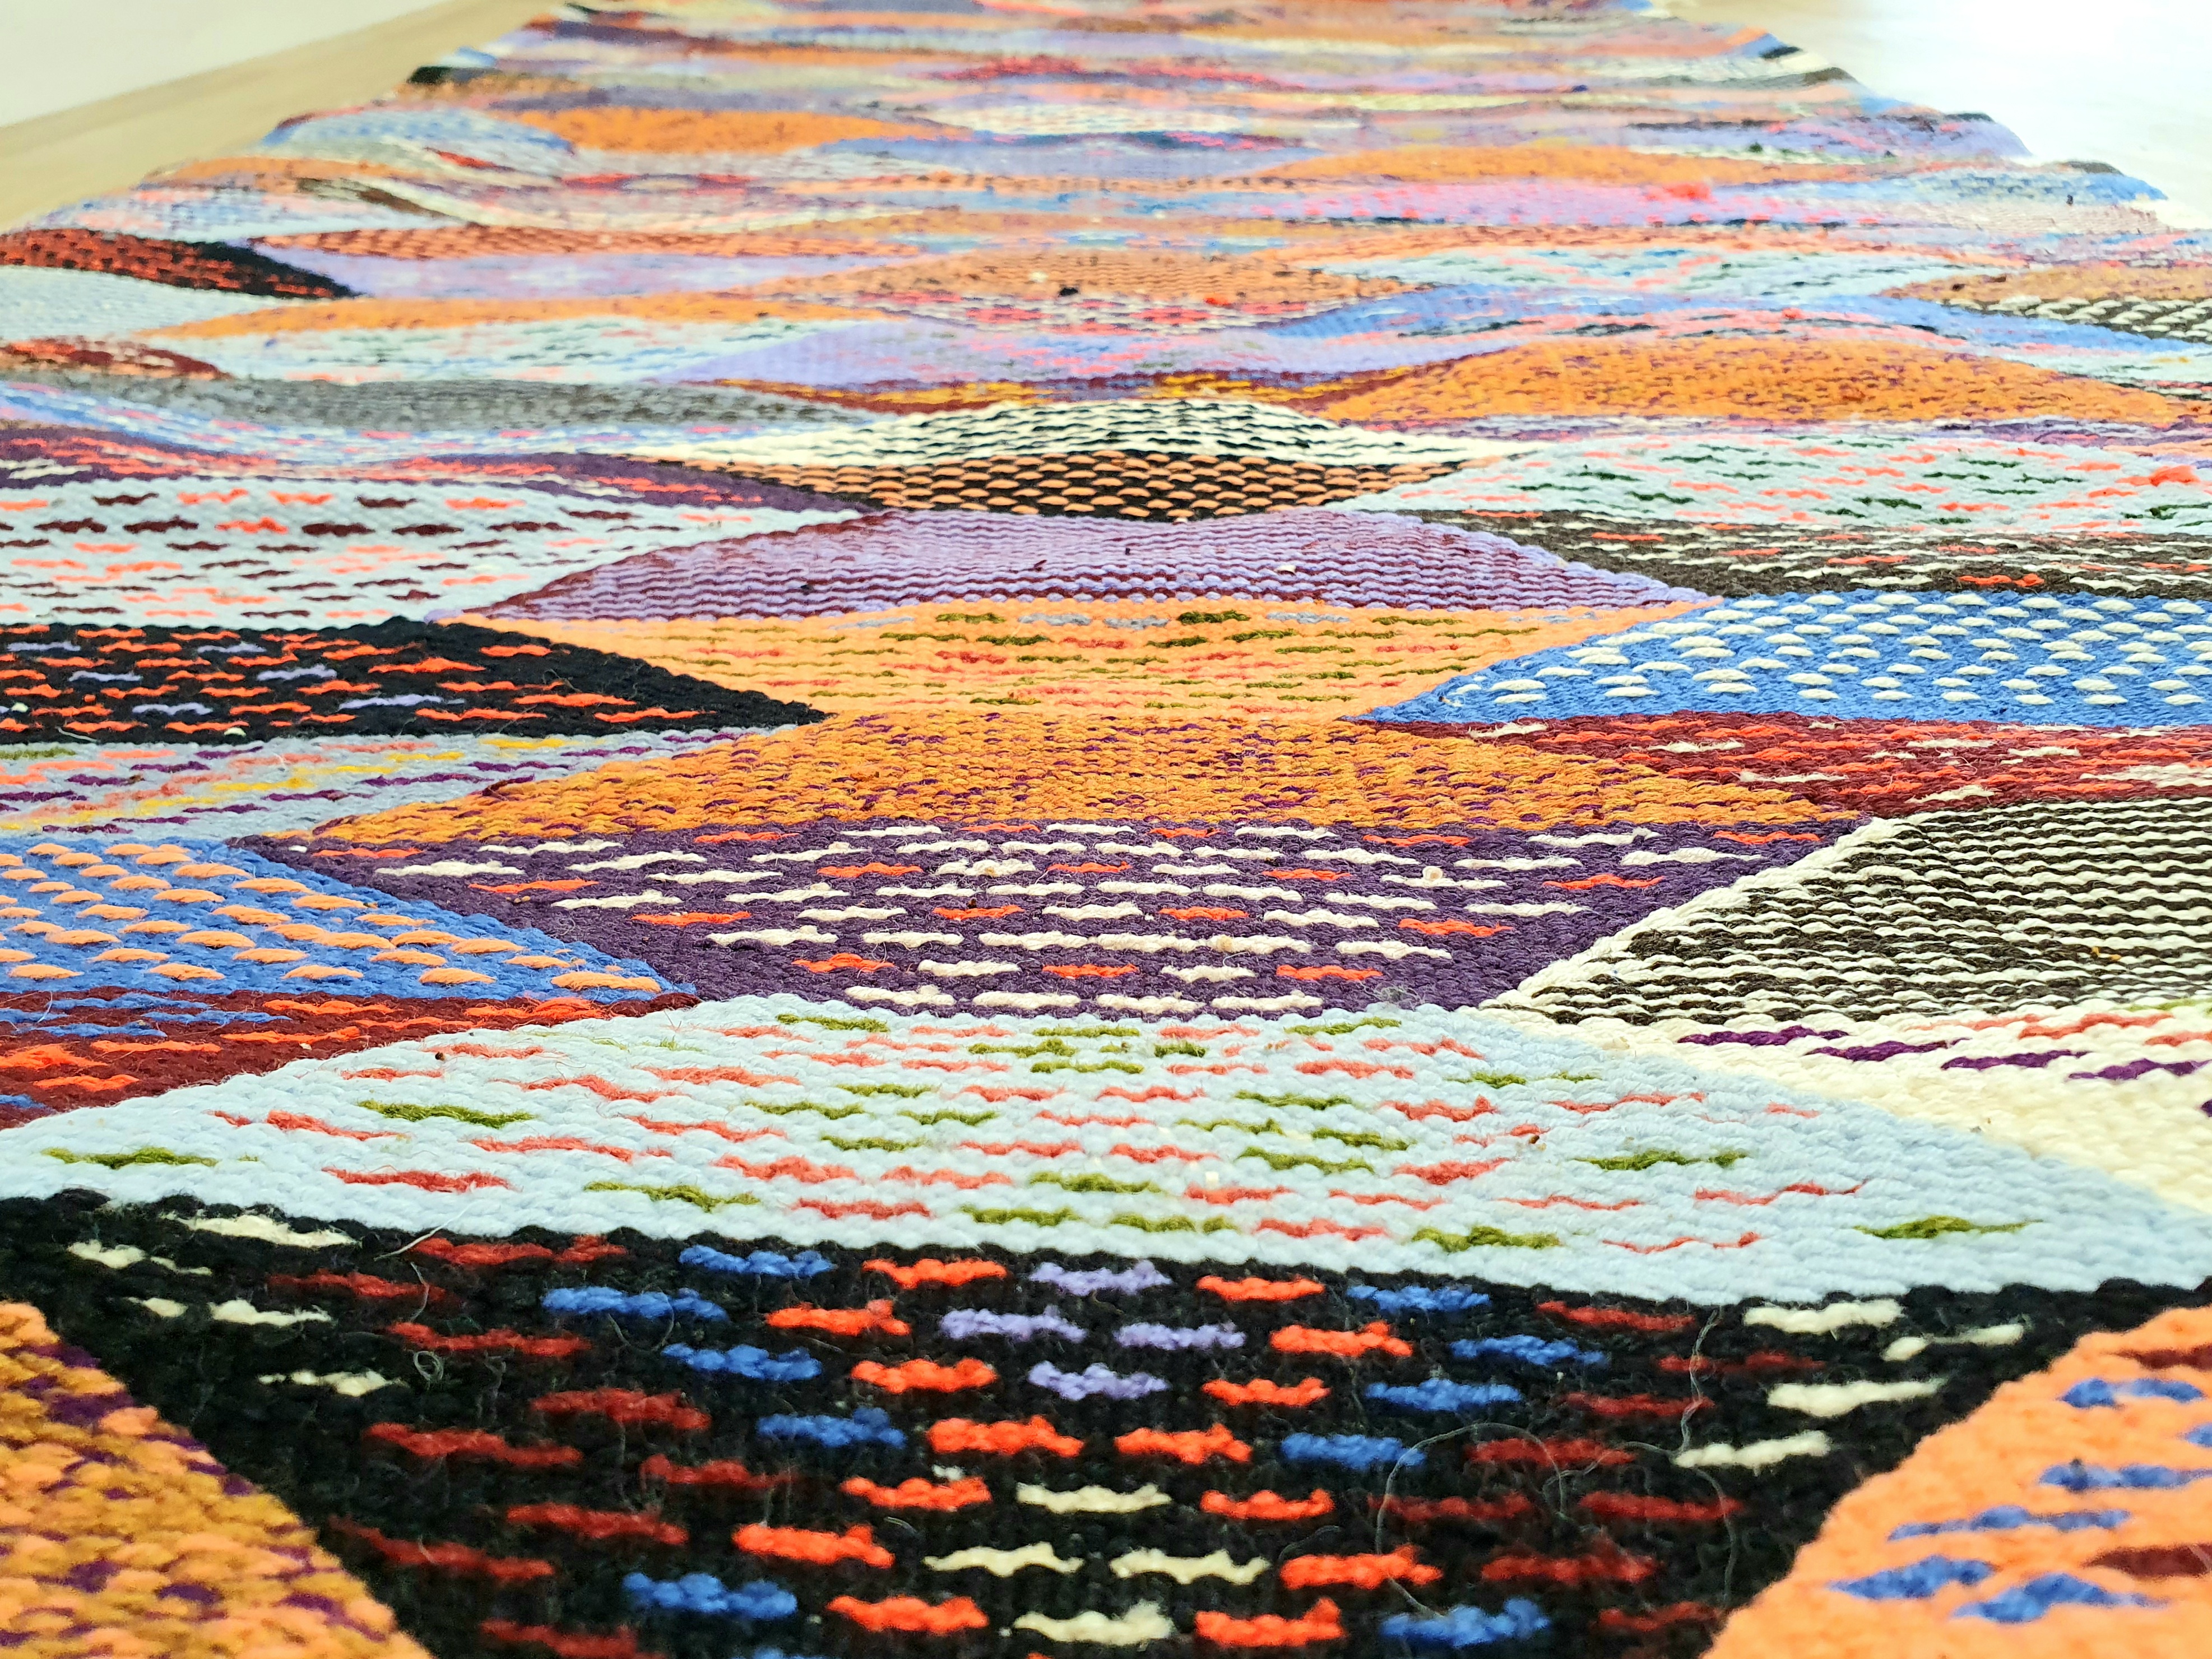 Vrai tapis berbere en pure laine tissé main au Maroc